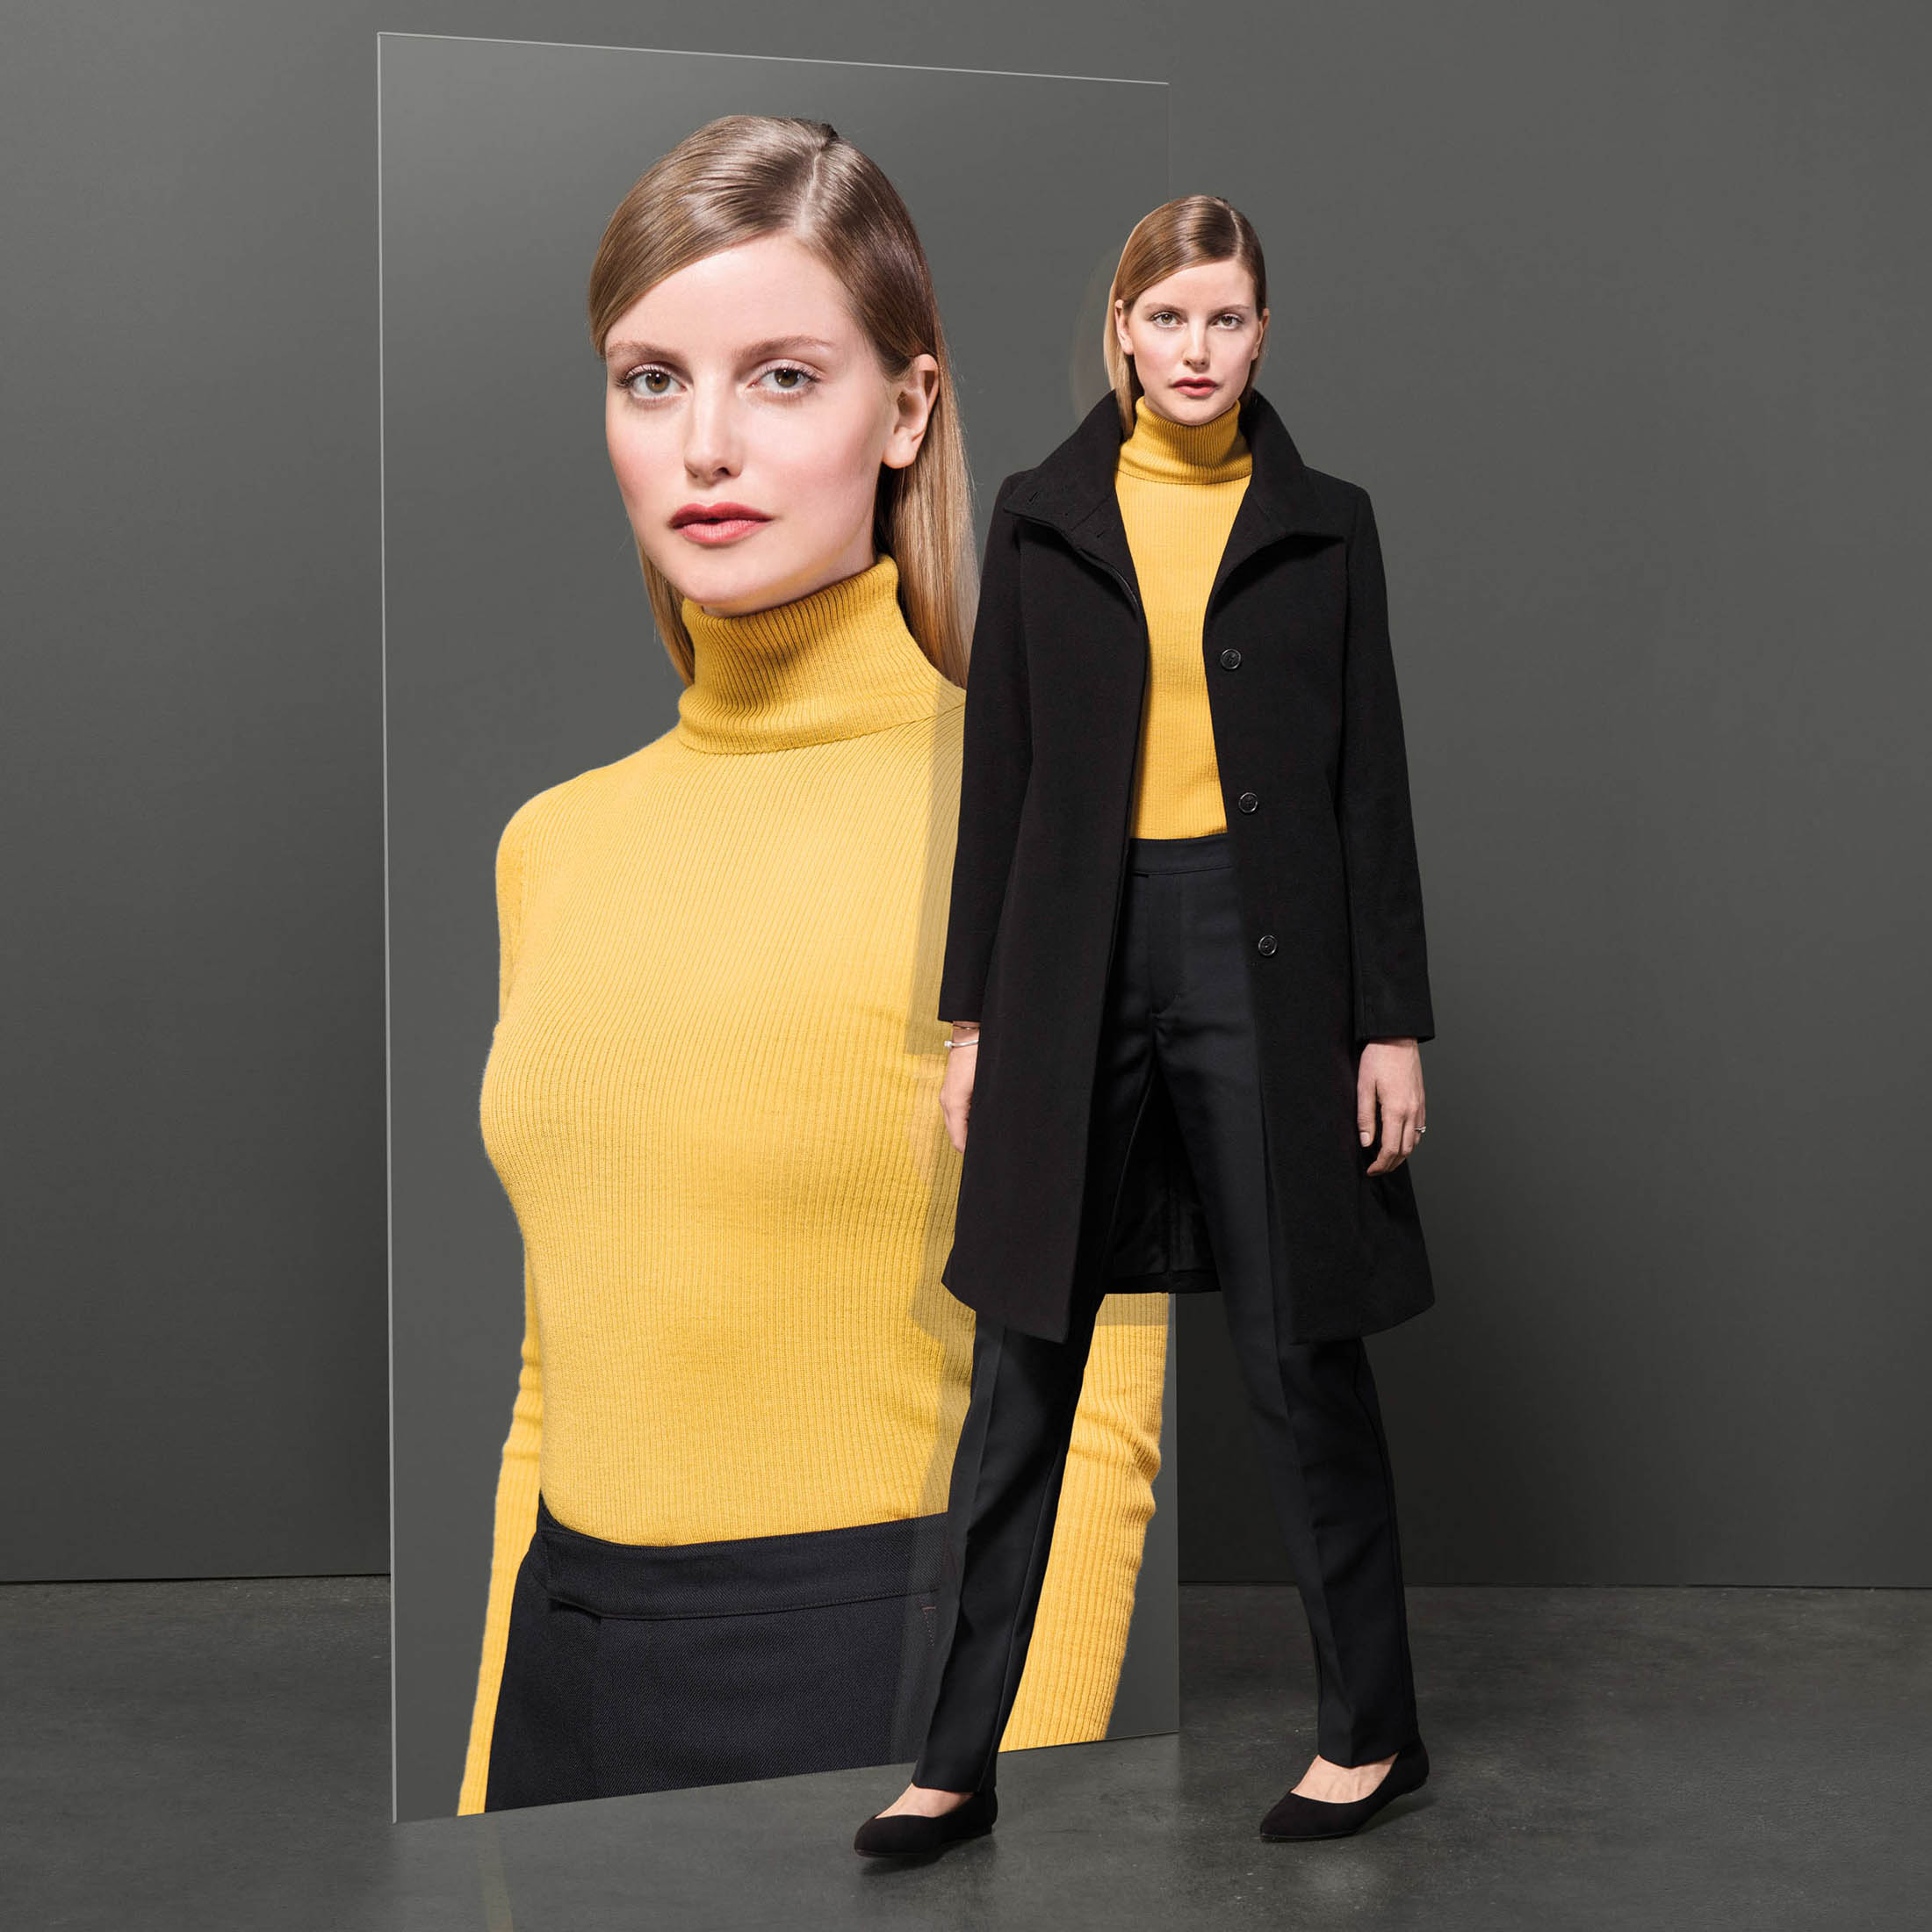 Eine Frau in einem modischen gelben Rollkragenpullover und schwarzen Hosen steht neben einem Spiegel, der ihr Bild reflektiert, und trägt über dem Rollkragenpullover einen schicken schwarzen Mantel. © Fotografie Tomas Rodriguez